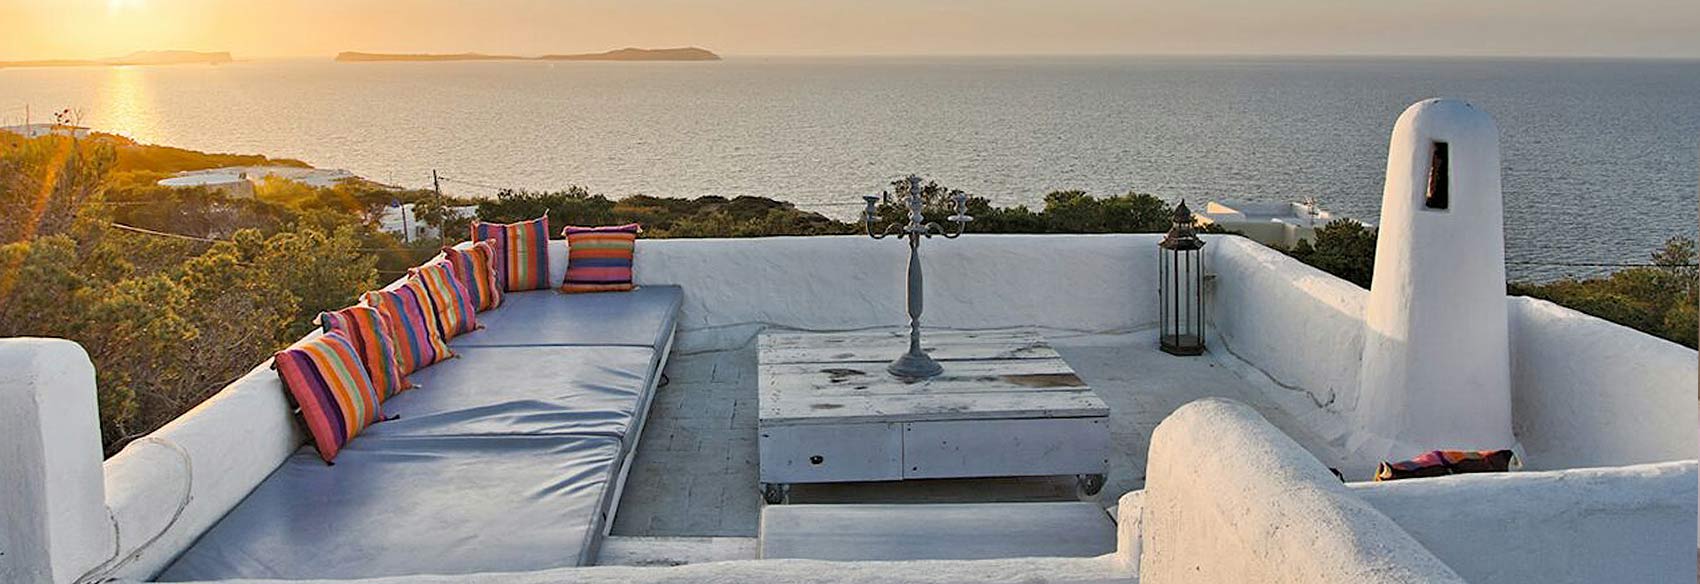 rental of private luxury villas in Ibiza. VIP services in Ibiza. Consulting Services Ibiza